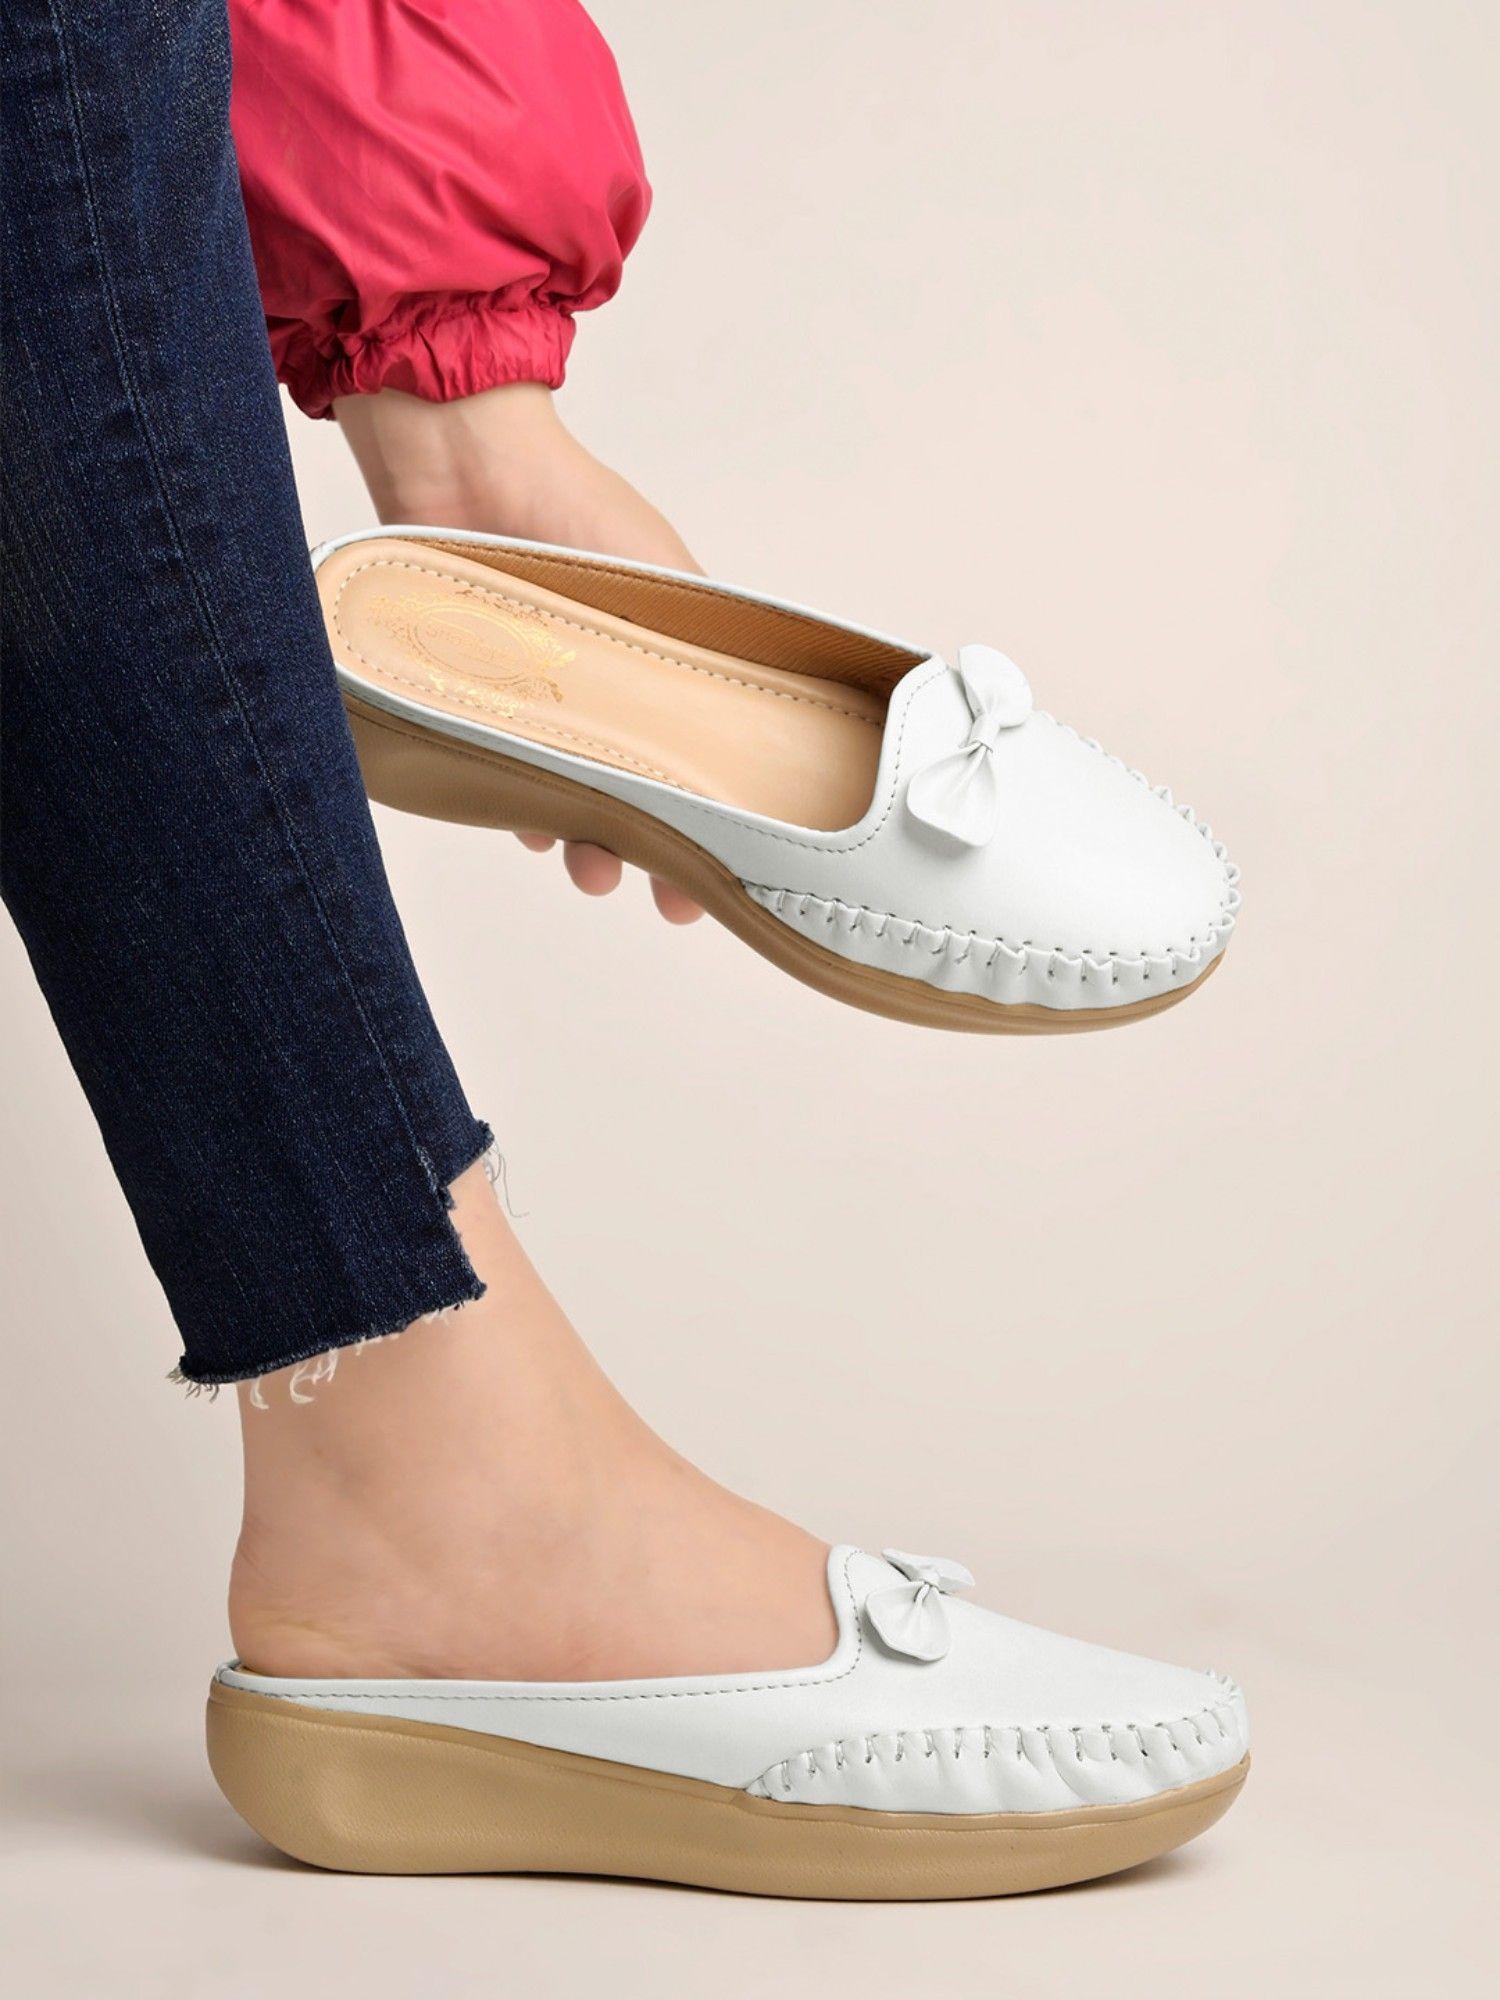 upper bow detailed white slip-on loafers for girls